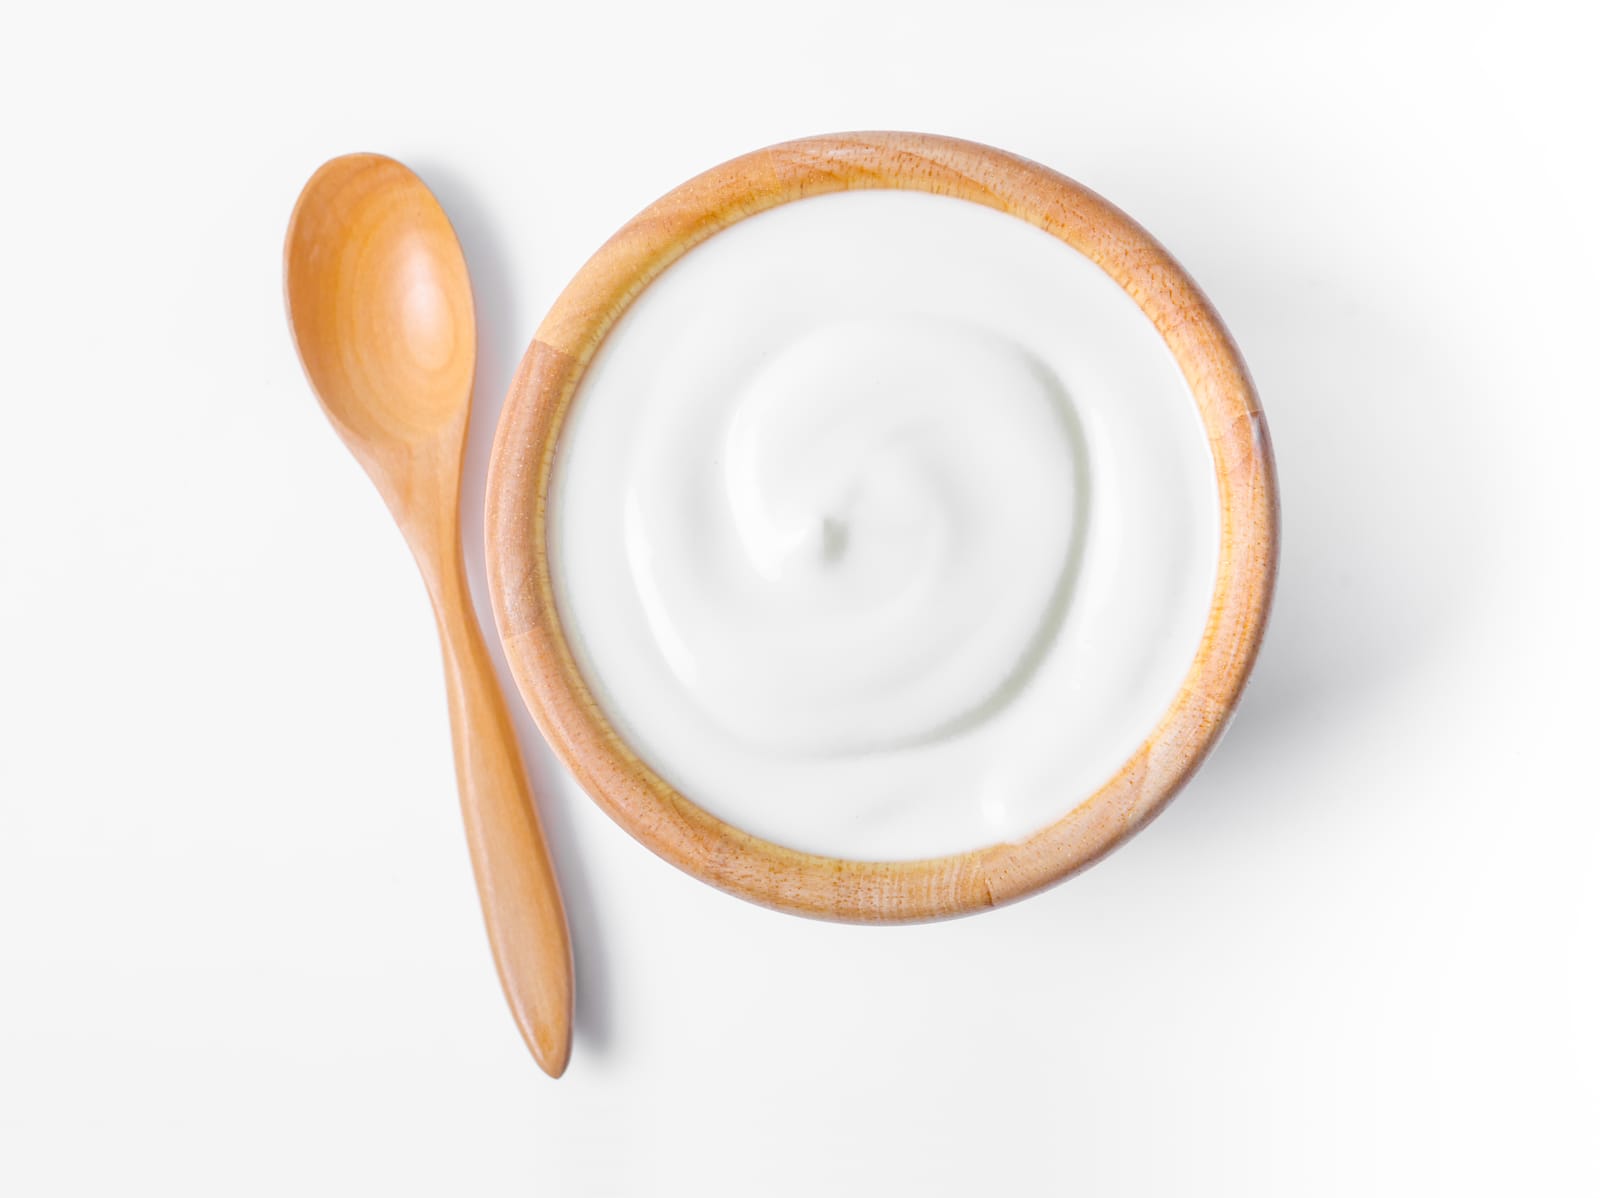 A bowl of yogurt